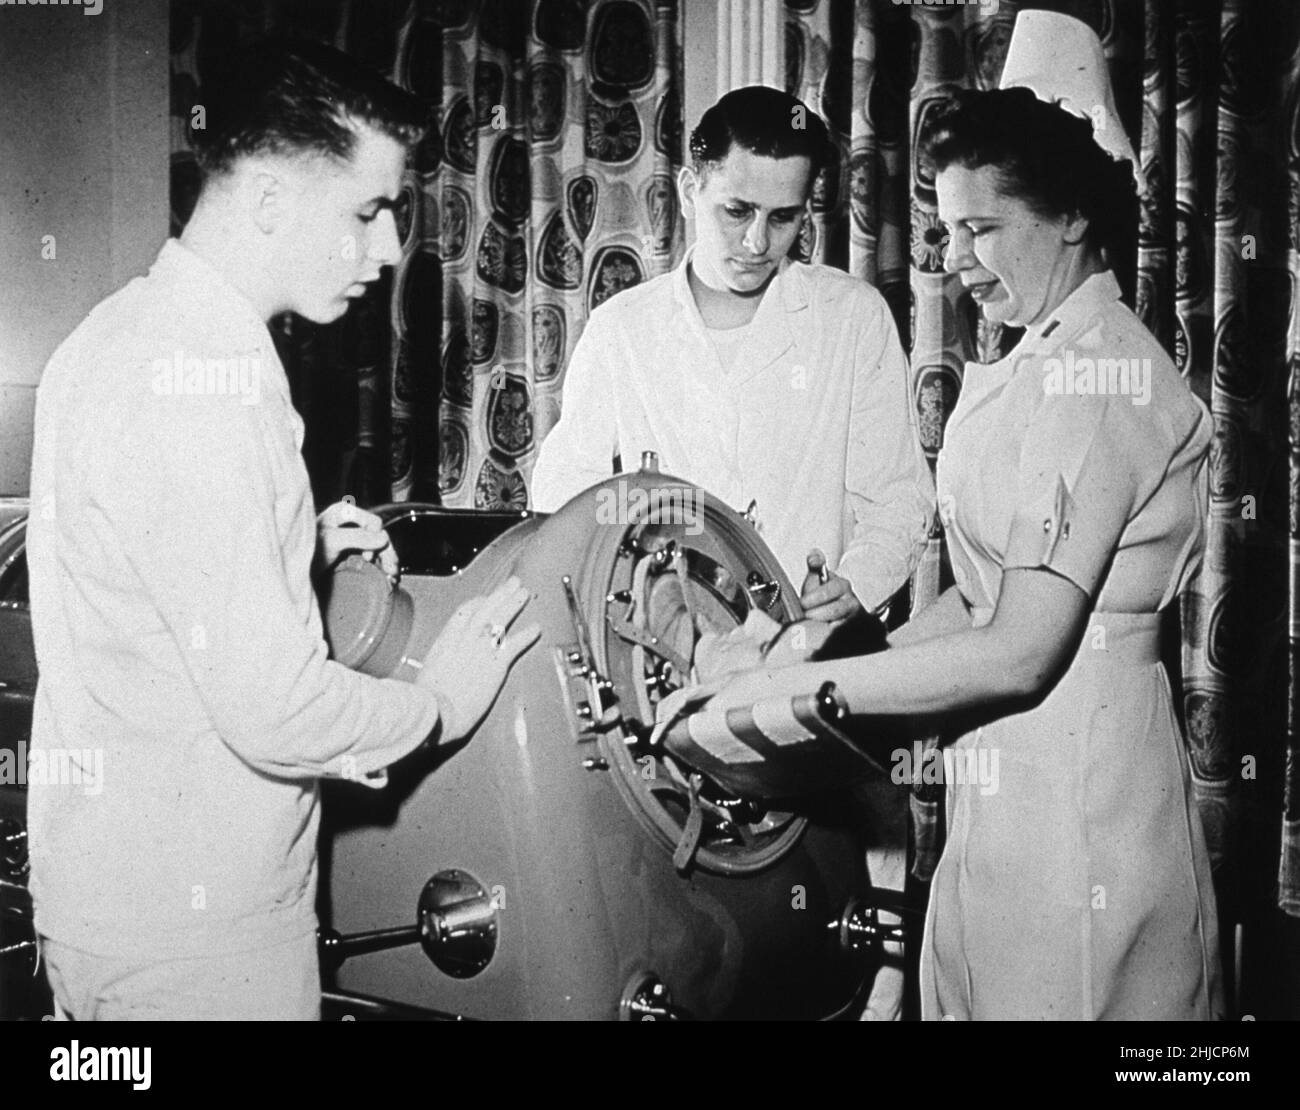 Eine Krankenschwester und zwei Korpsmänner betreuen einen Poliomyelitis-Patienten in einer Eisenlunge. United States Army, 1949. Stockfoto